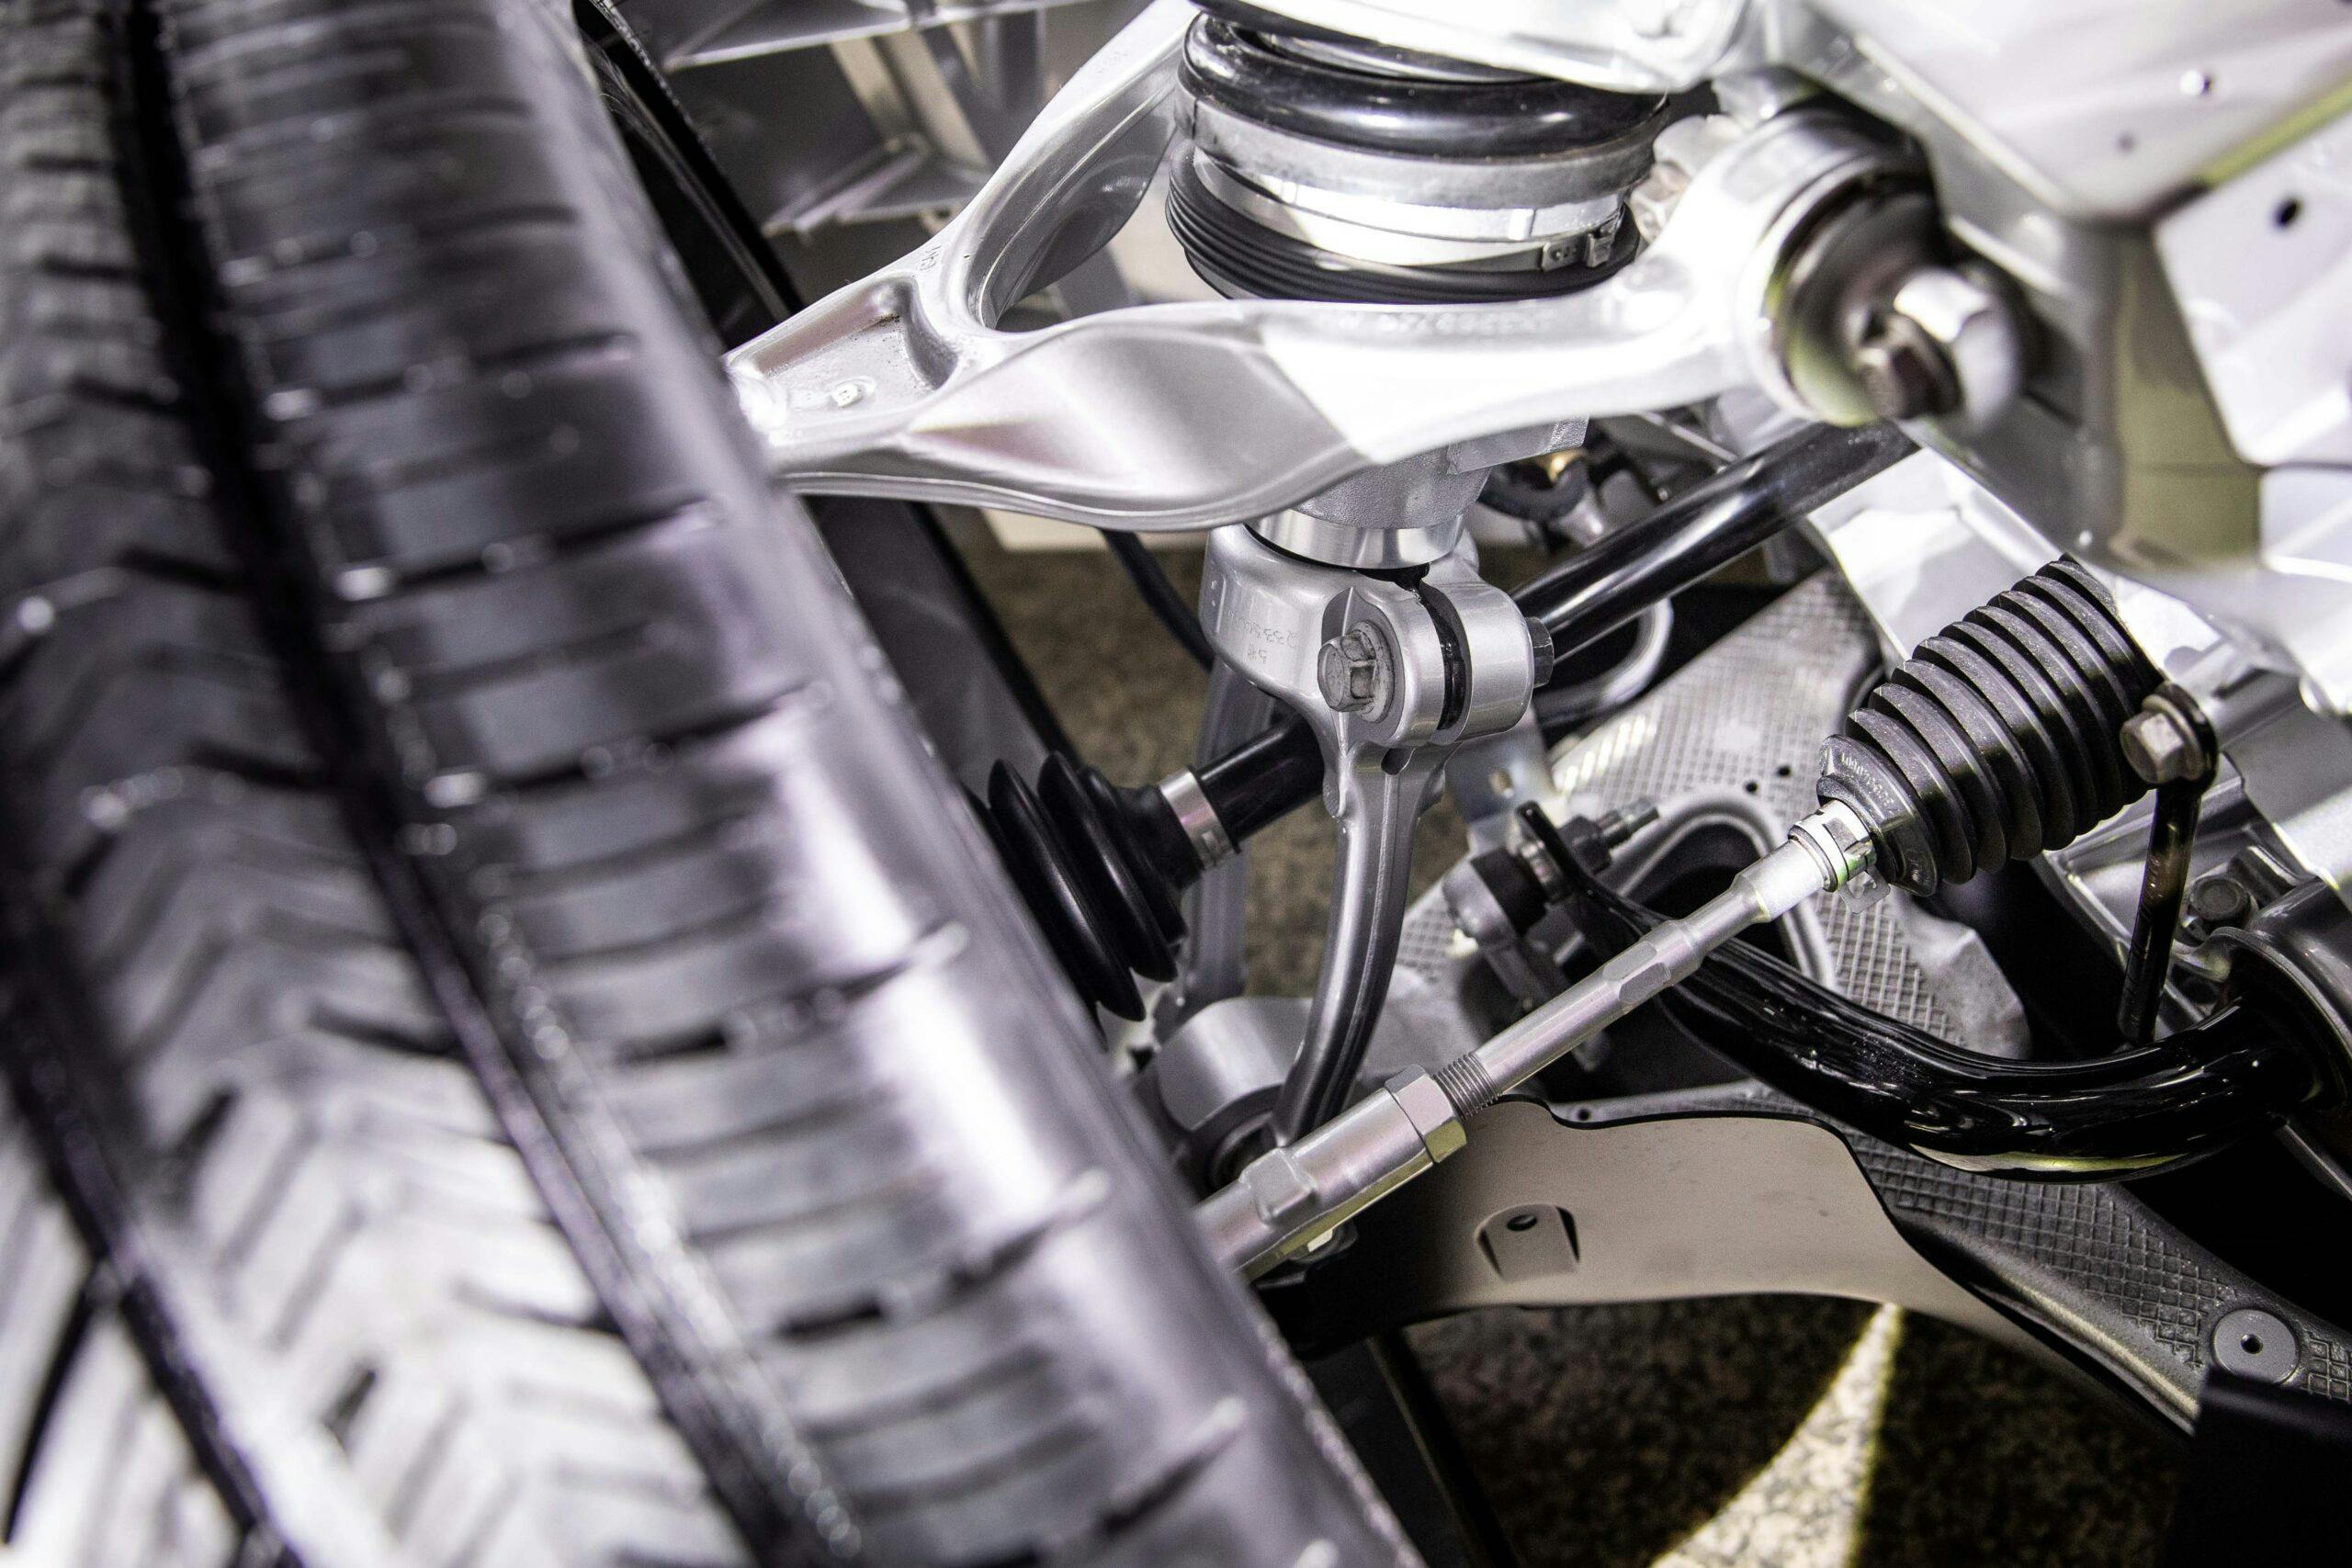 New Corvette E-Ray hybrid suspension parts